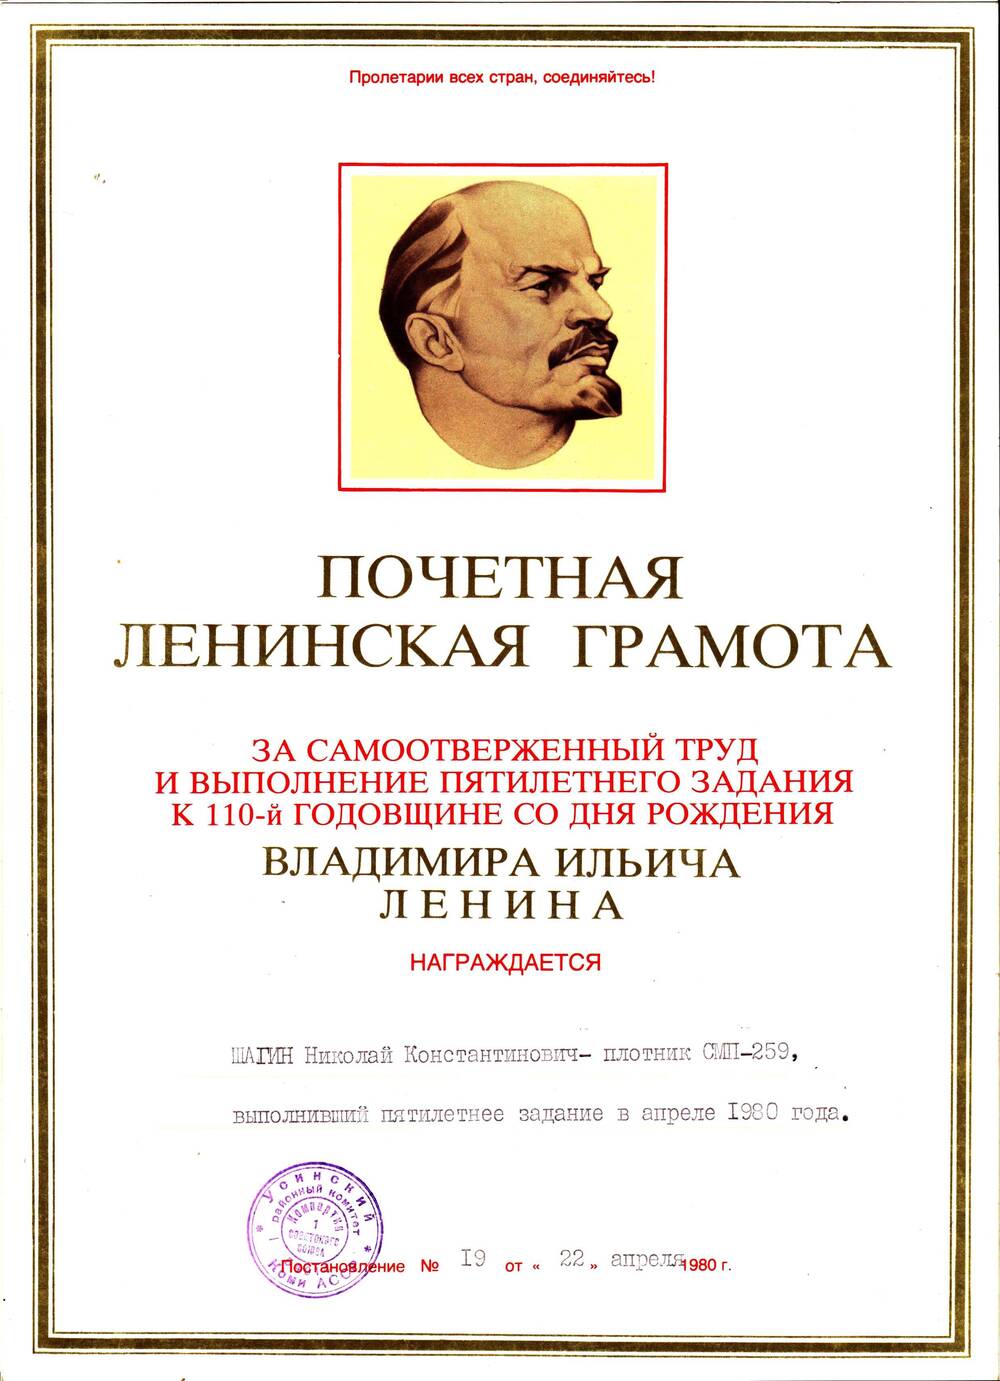 Почетная Ленинская грамота Шагина Николая Константиновича- плотника СМП-259,  выполнивший пятилетнее задание в апреле 1980 года.